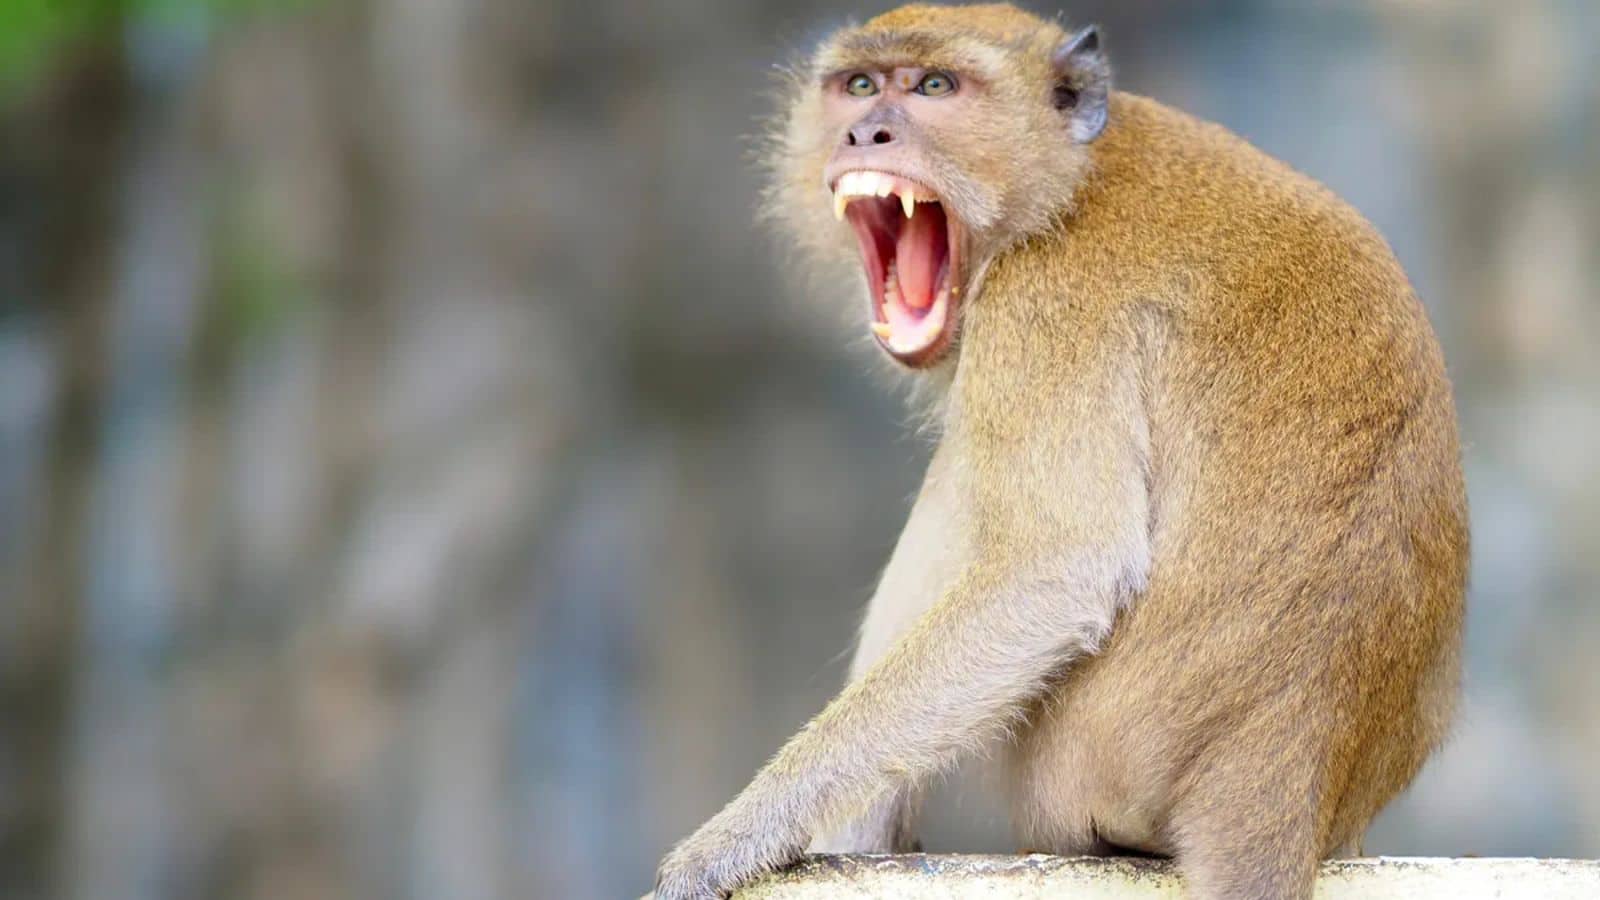 Hong Kong man contracts rare B virus after monkey attack